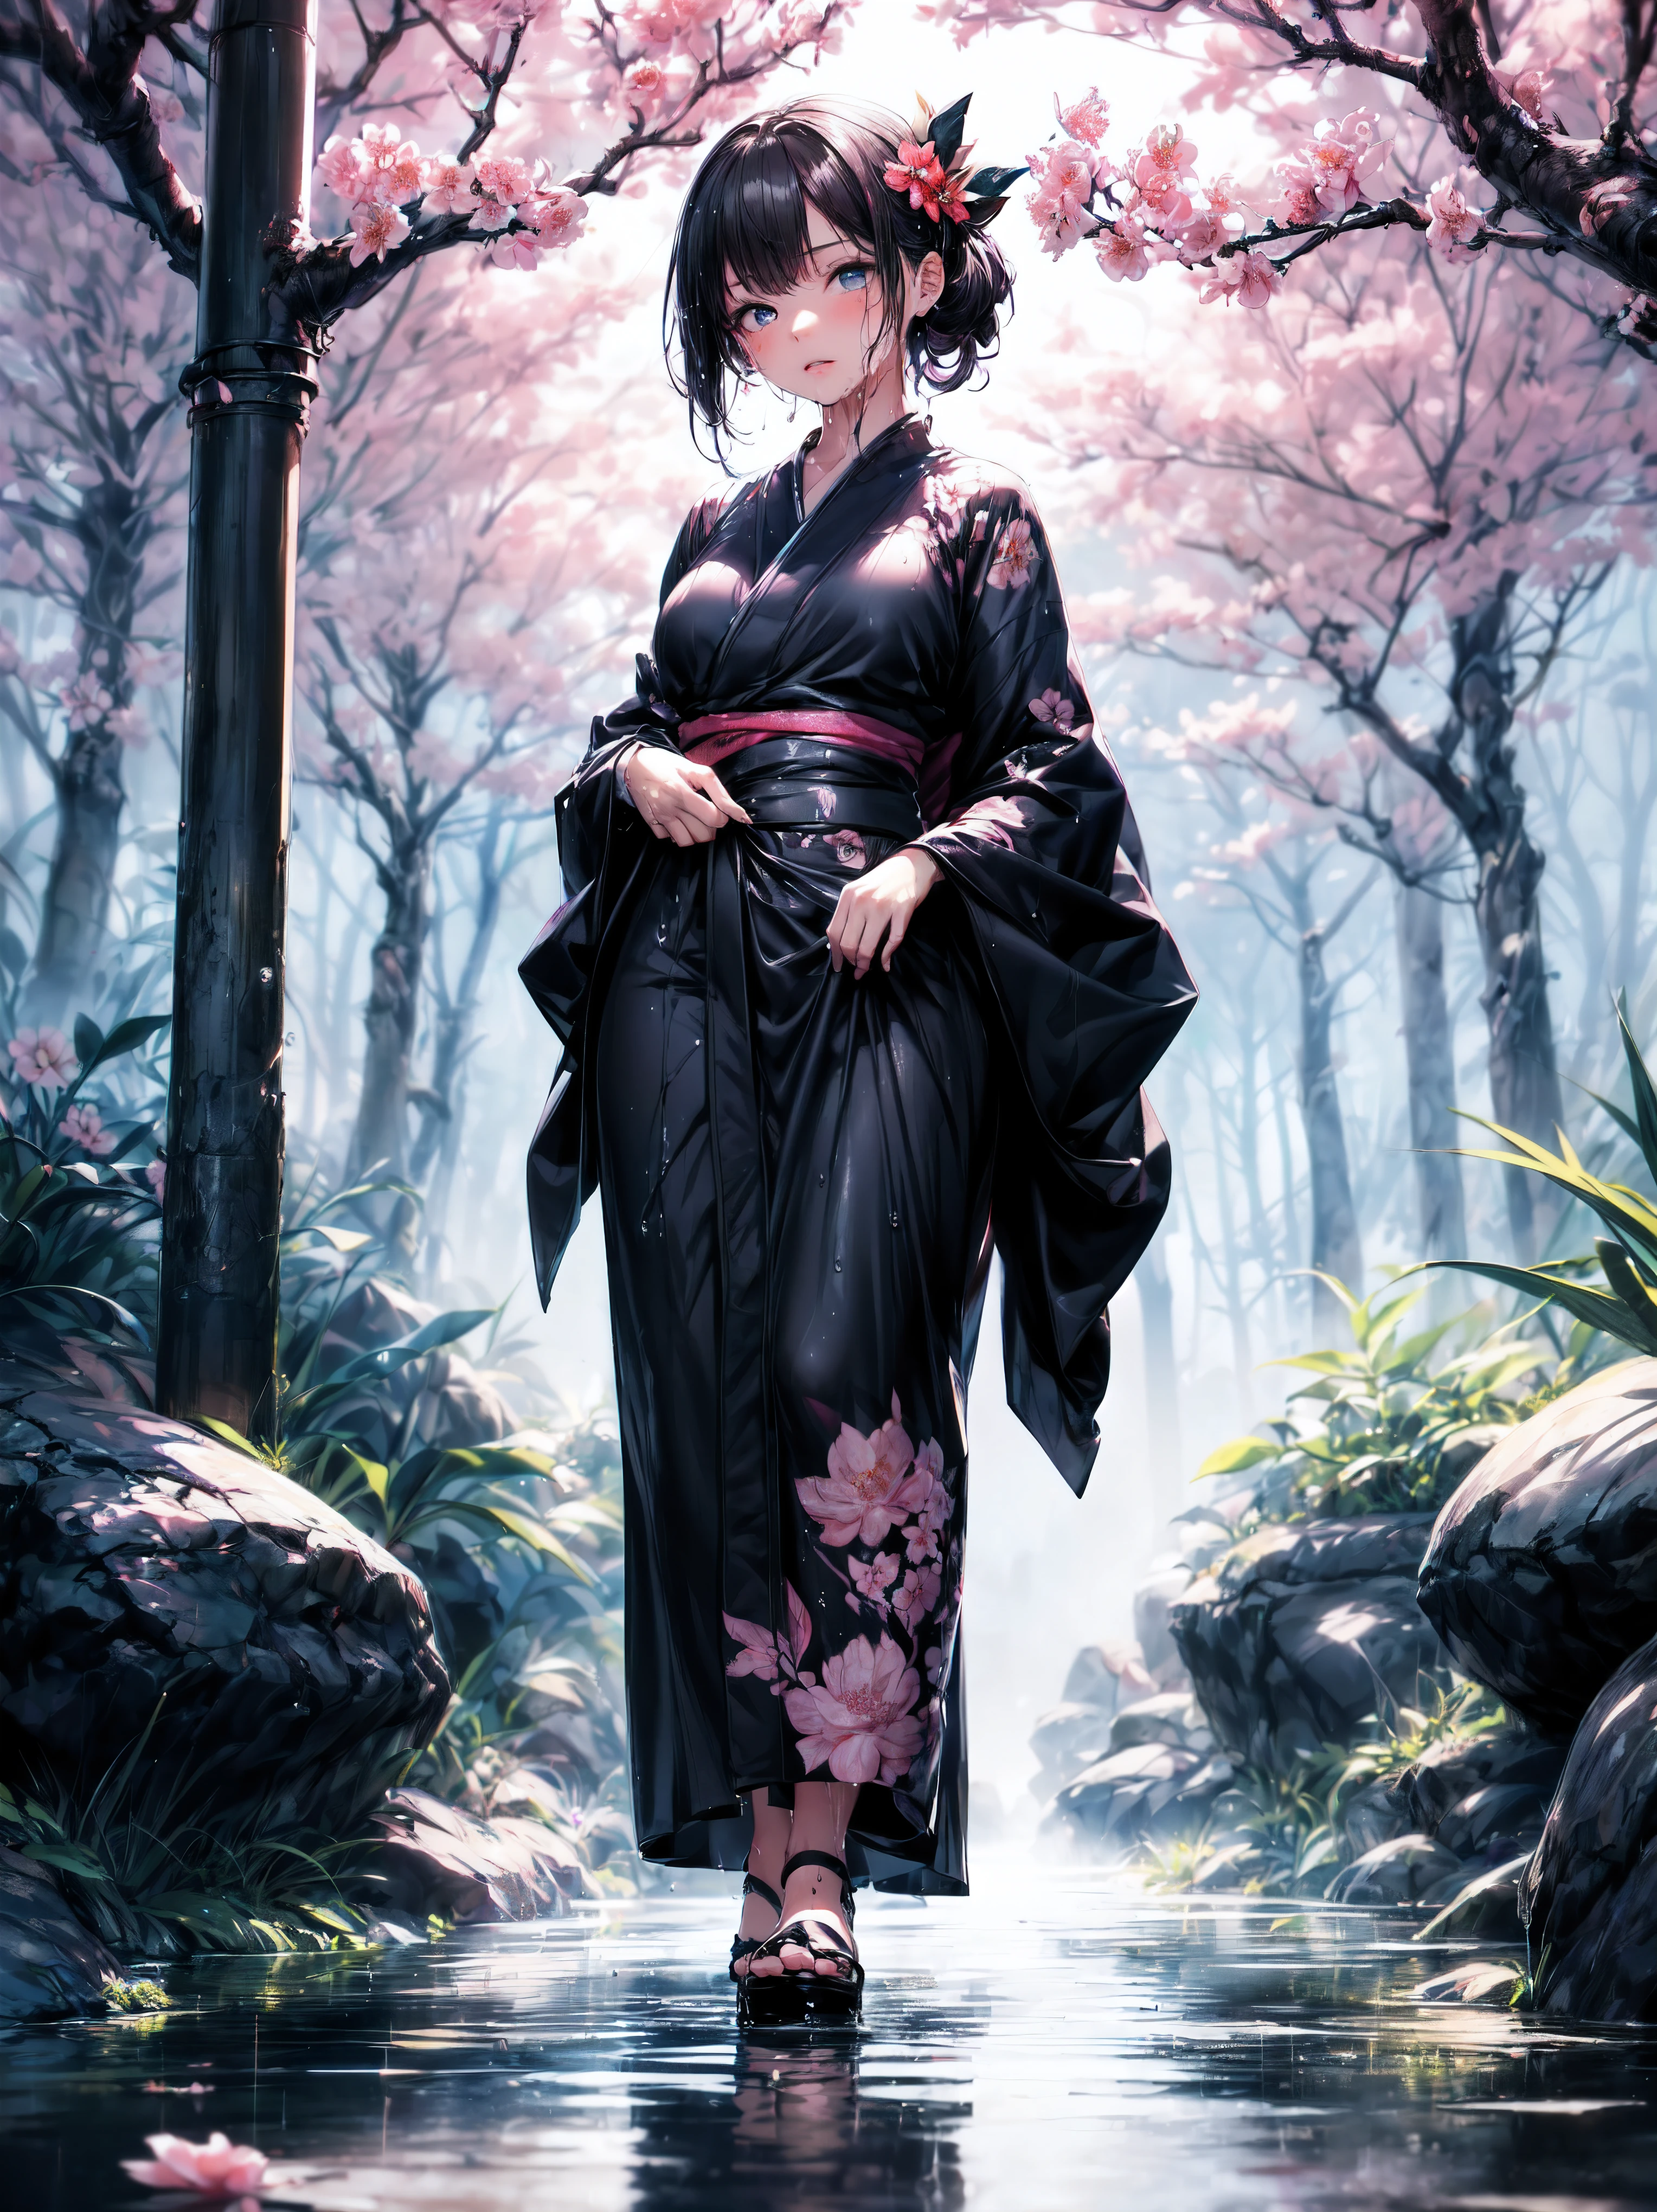 (cuerpo completo), (una niña de 7 años:1.2), (niña muy joven), cambiar, (Solo), (pequeña mama), (Gran angular), foto cruda, Estético, Complejo, galardonado, chiaroscuro, mejor calidad, antecedentes detallados, (atmósfera brumosa:1.2), (duro día lluvioso:1.1),((Chica con kimono de algodón negro:1.2)), kimono grande de algodón negro, kimono negro grande con textura de algodón, manga de kimono negra muy larga, mejores arrugas, Arrugas reales, Mejores sombras, (Húmedo, Húmedo body, Húmedo hair, Húmedo skin, very Húmedo  black kimono, reflection on the Húmedo kimono, delicado bordado de flores de cerezo, gotas de agua sutiles:1.15), (rociador de agua:1.1), (kimono de tela, mejor kimono arrugado, Envoltura de moco transparente), (Camina por el (Niebla oscura Jardín Zen)), (ubicación real), Ojos delicados y hermosos, pose casual, Texturas detalladas, posando, (Cuerpo anatómicamente correcto, cara detallada, (kimono de texturas muy detalladas con estampado floral.), (pelo negro), cabello voluminoso, adorno para el pelo, colores vívidos, expresión tranquila, mirar al espectador, paisaje pacífico, sensación de limpieza y frescura, Agua hermosa y detallada